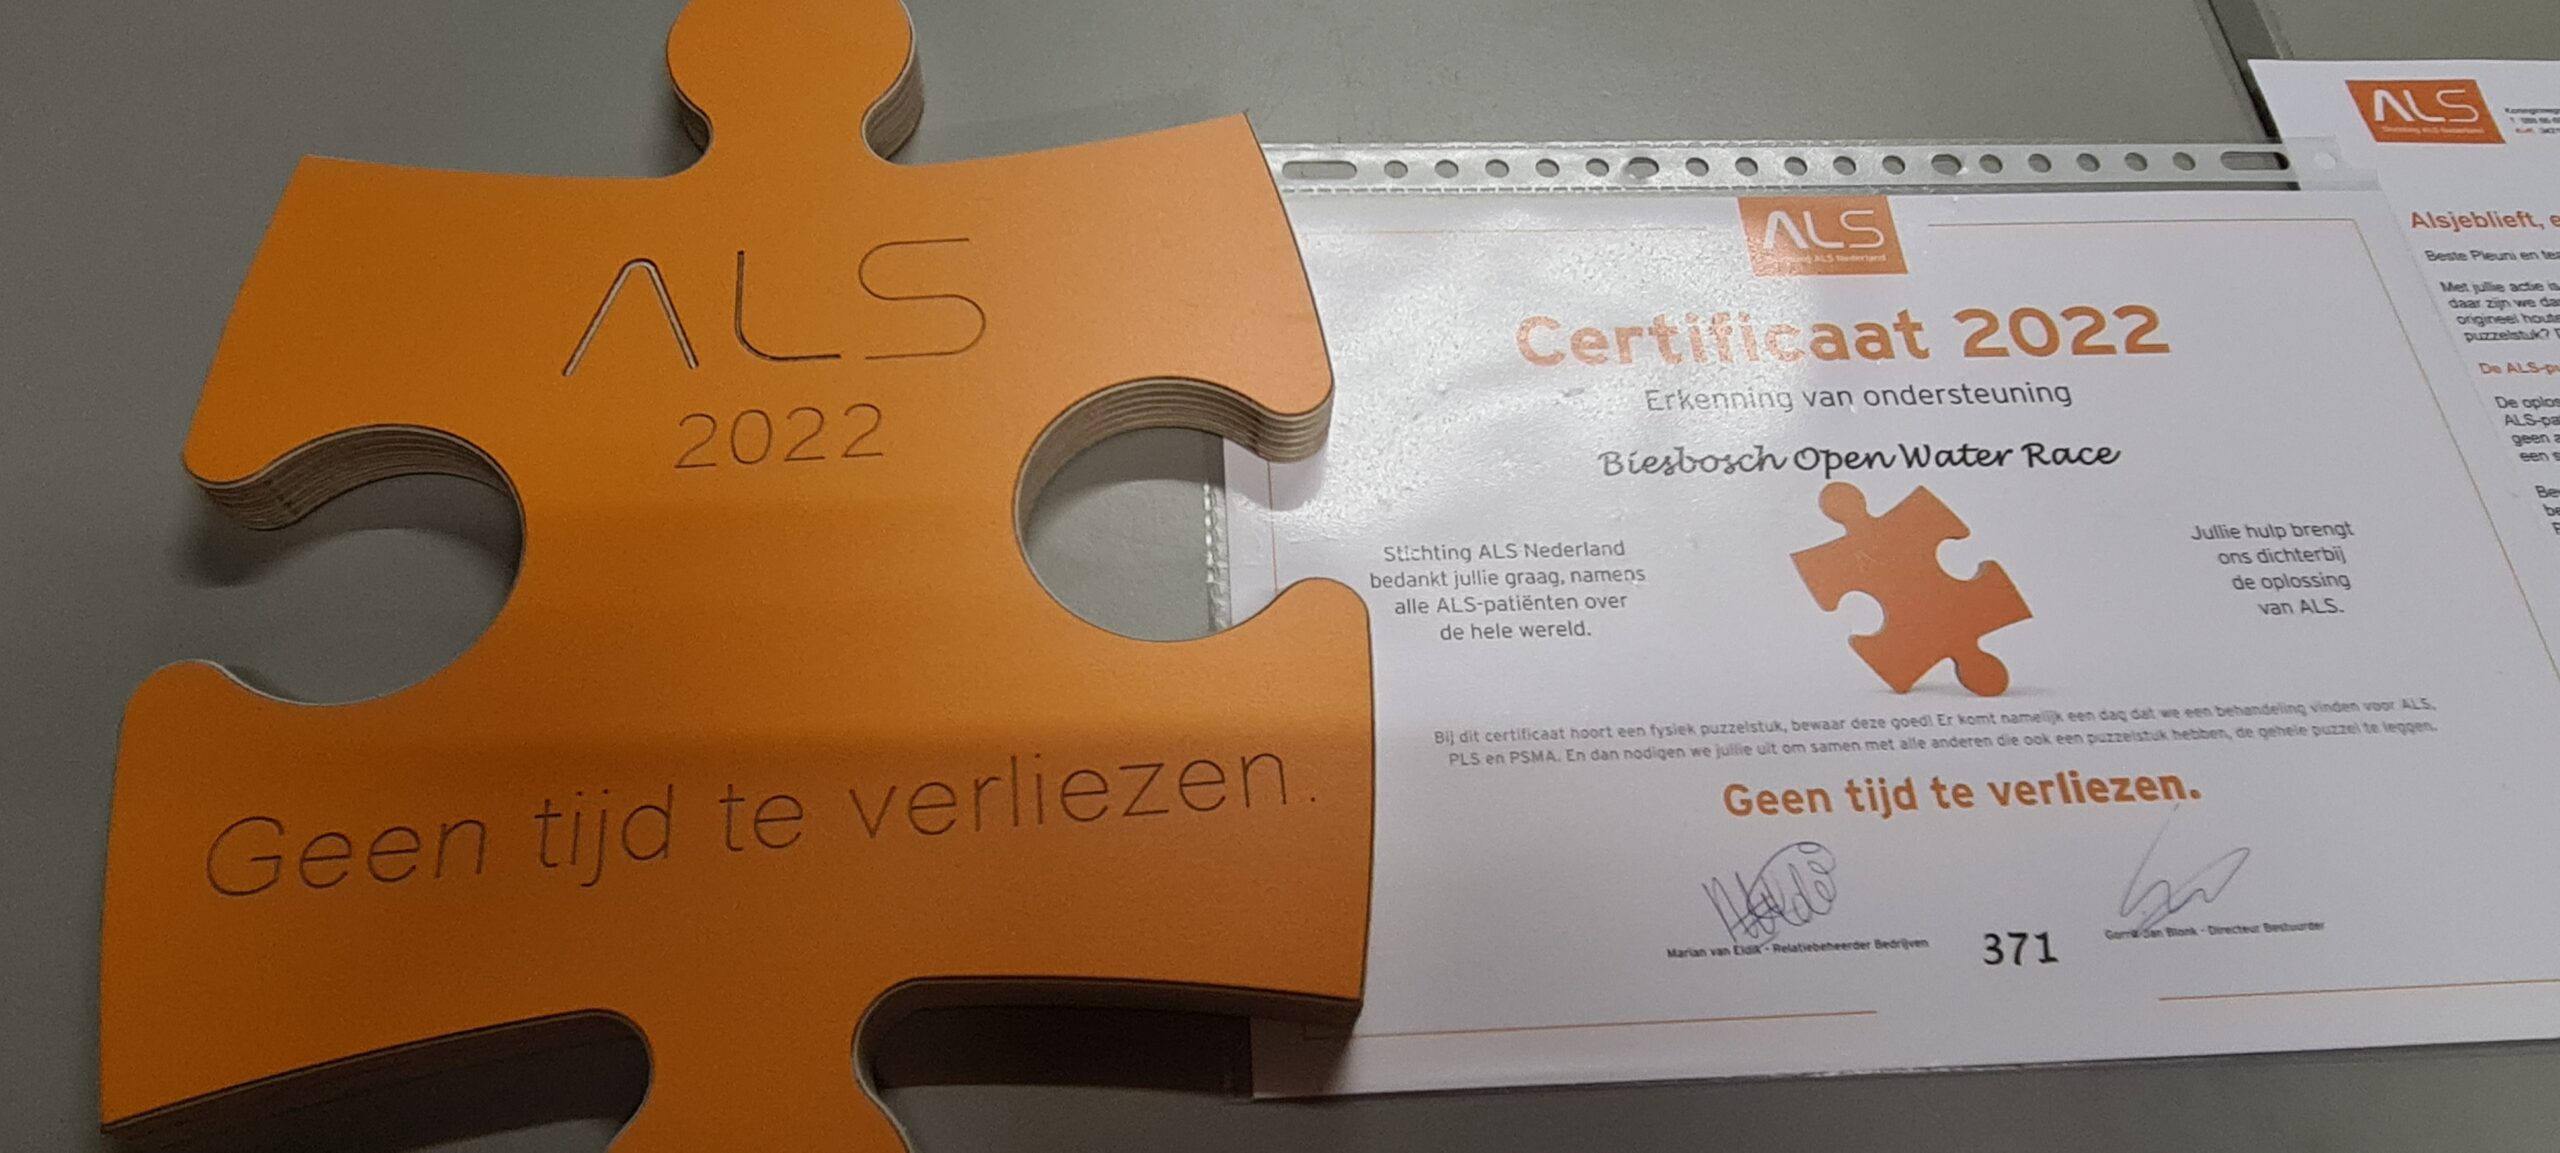 Ruim drie duizend euro voor Stichting ALS Nederland